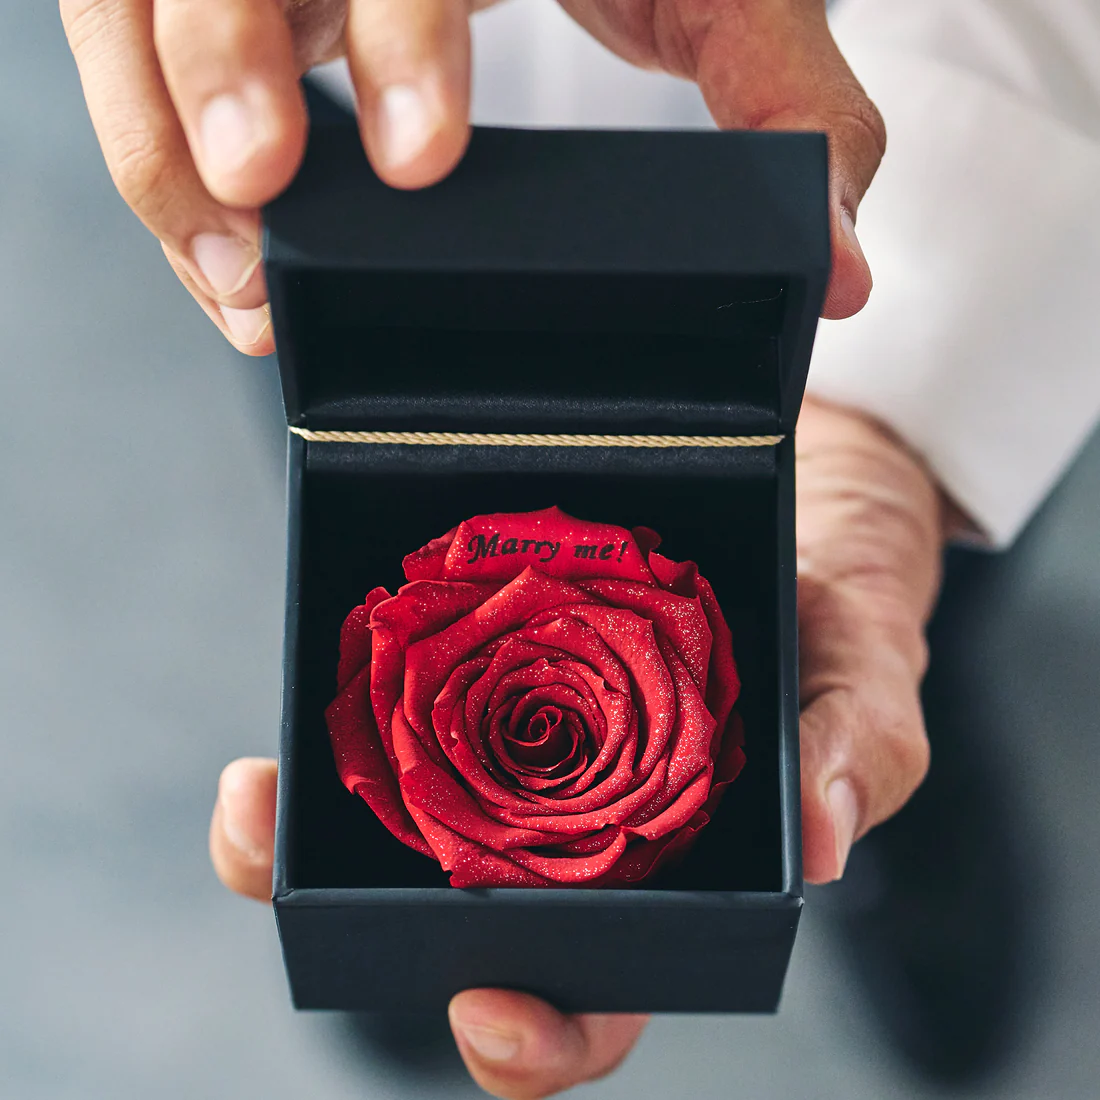 プロポーズ用のダイヤモンドフラワーで黒い小箱の中に赤い薔薇の花とメッセージが入っている